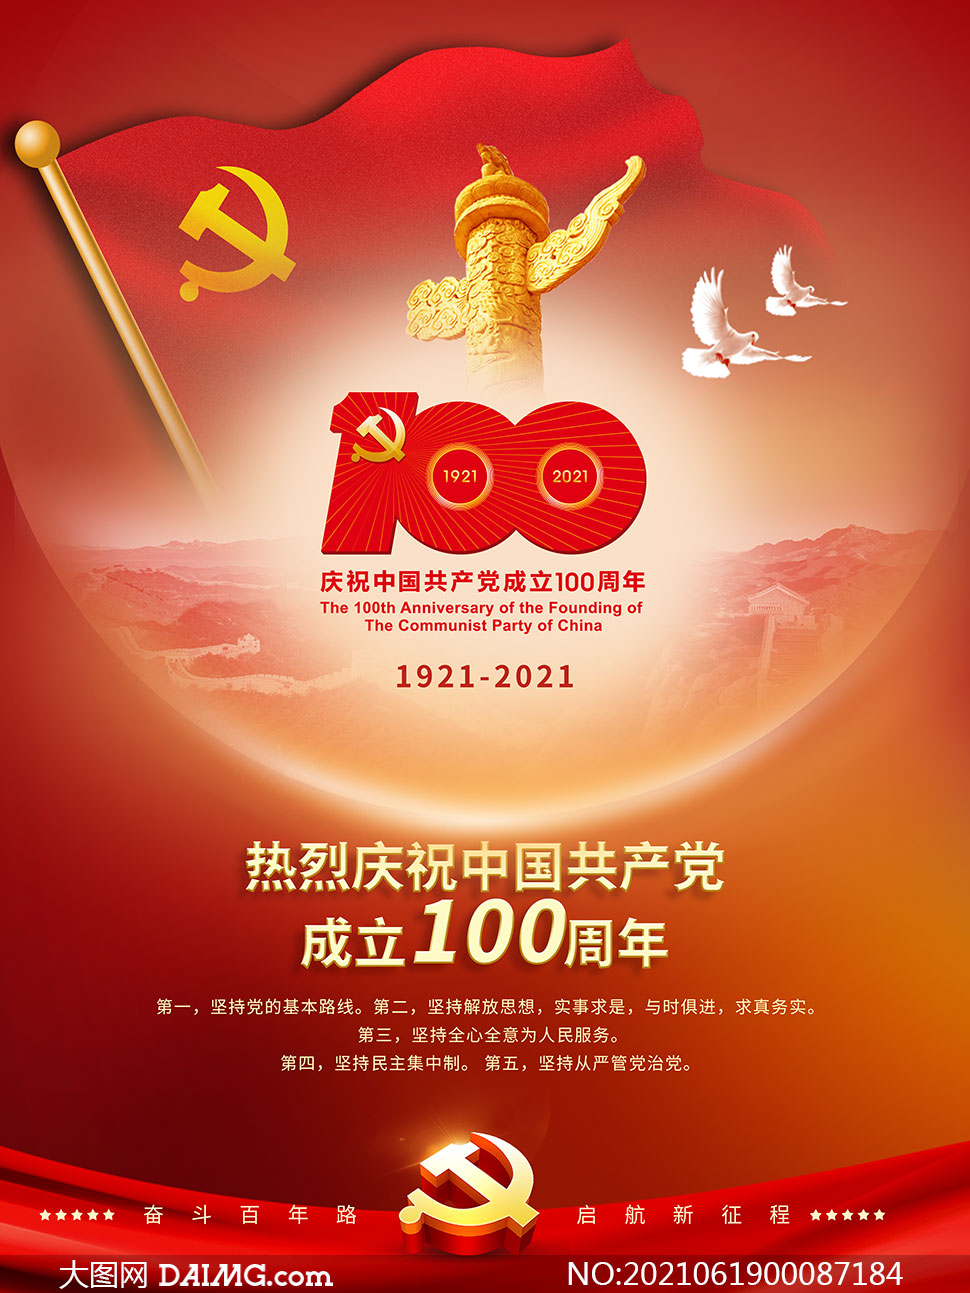 庆祝建党100周年主题活动海报psd素材